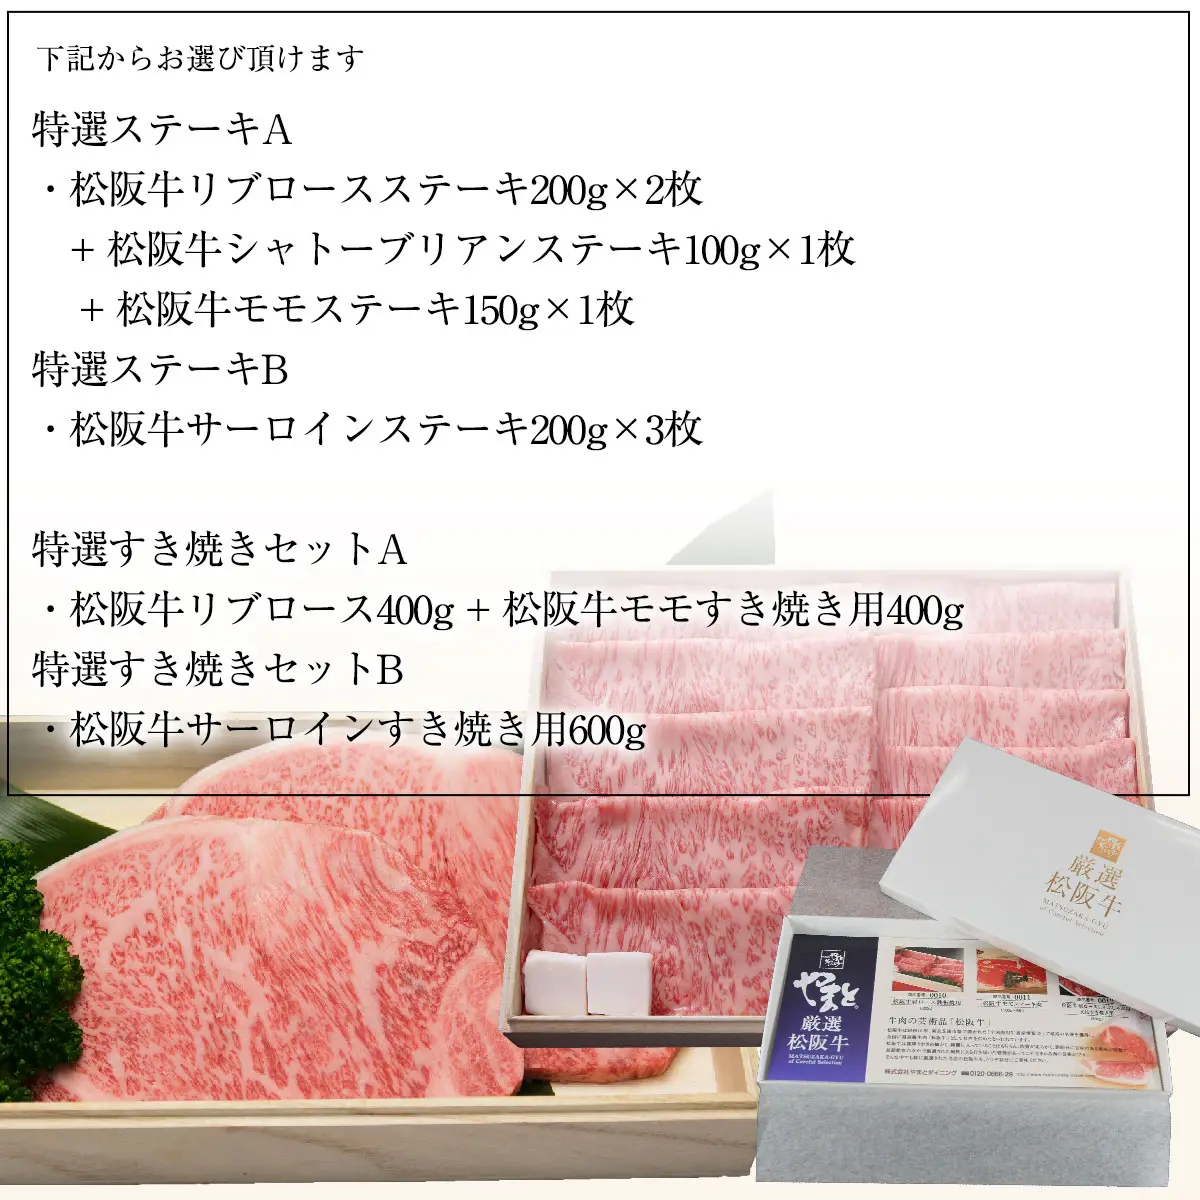 松阪牛 （松坂牛） お肉 の カタログ ギフト券 54000円 【送料無料】